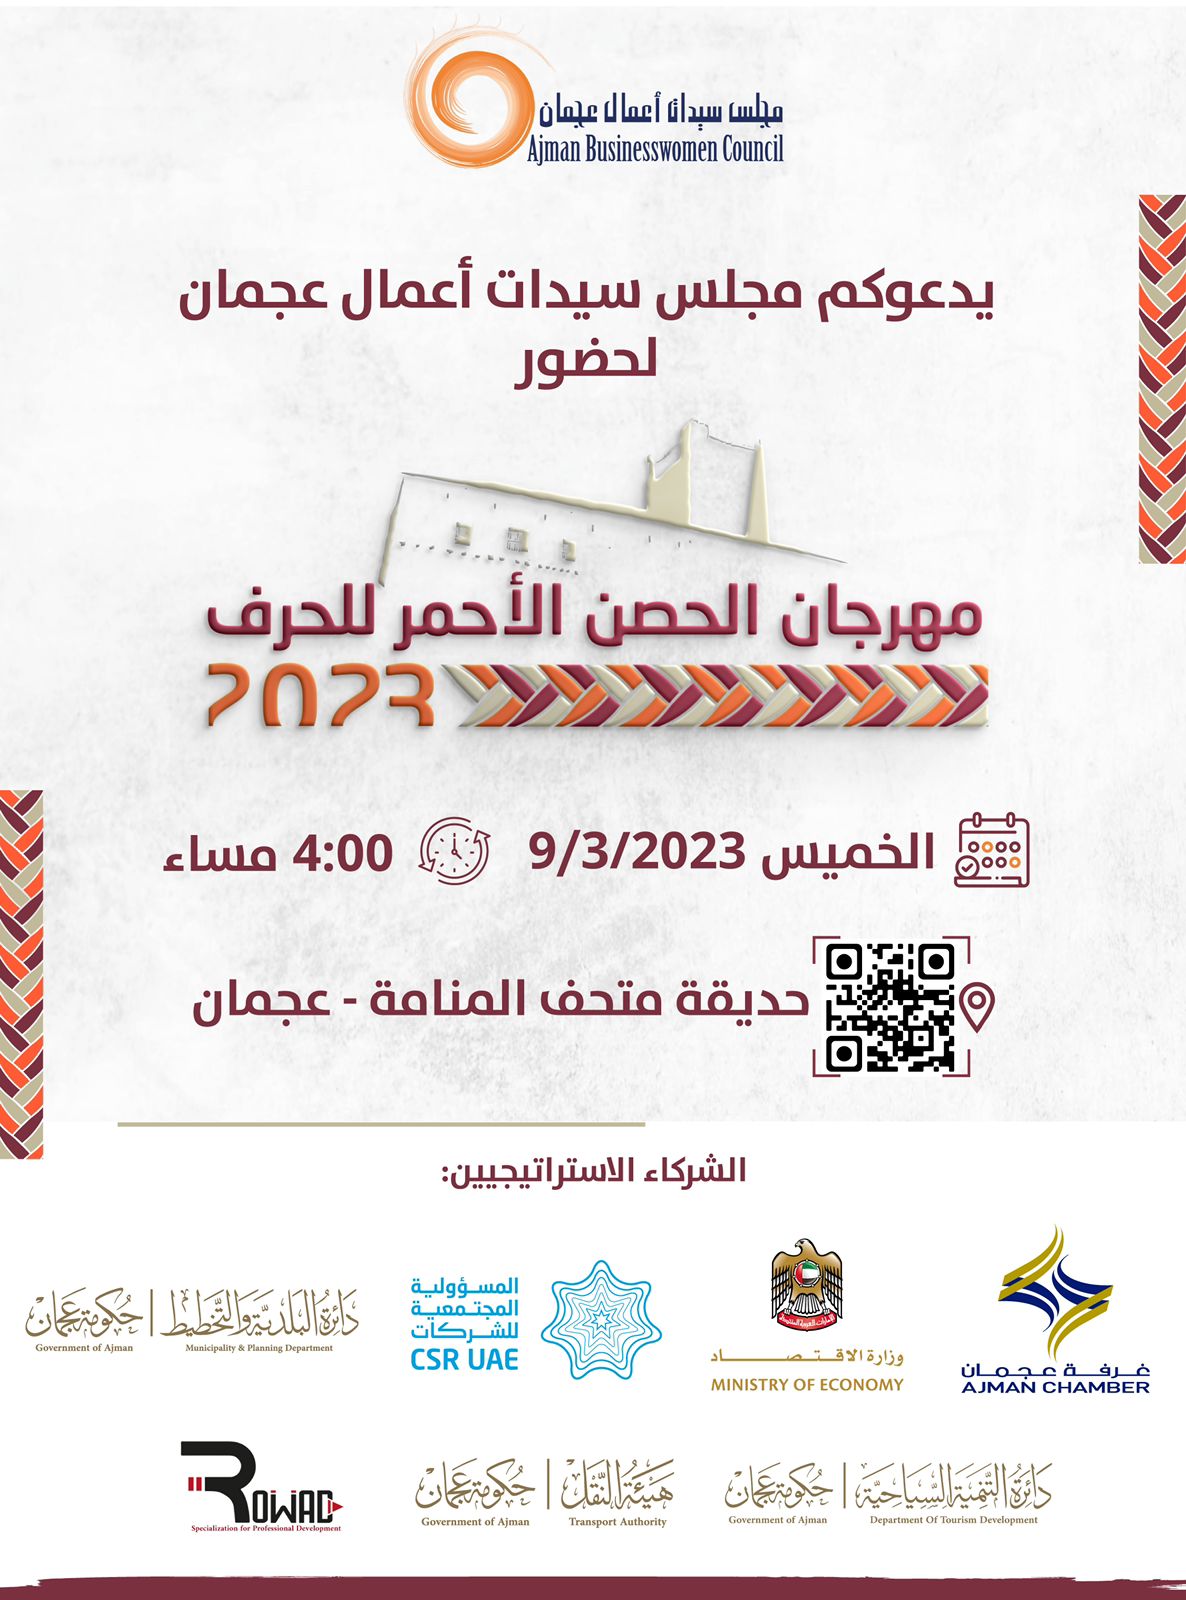 مهرجان "الحصن الأحمر للحرف" ينطلق غدا في متحف المنامة